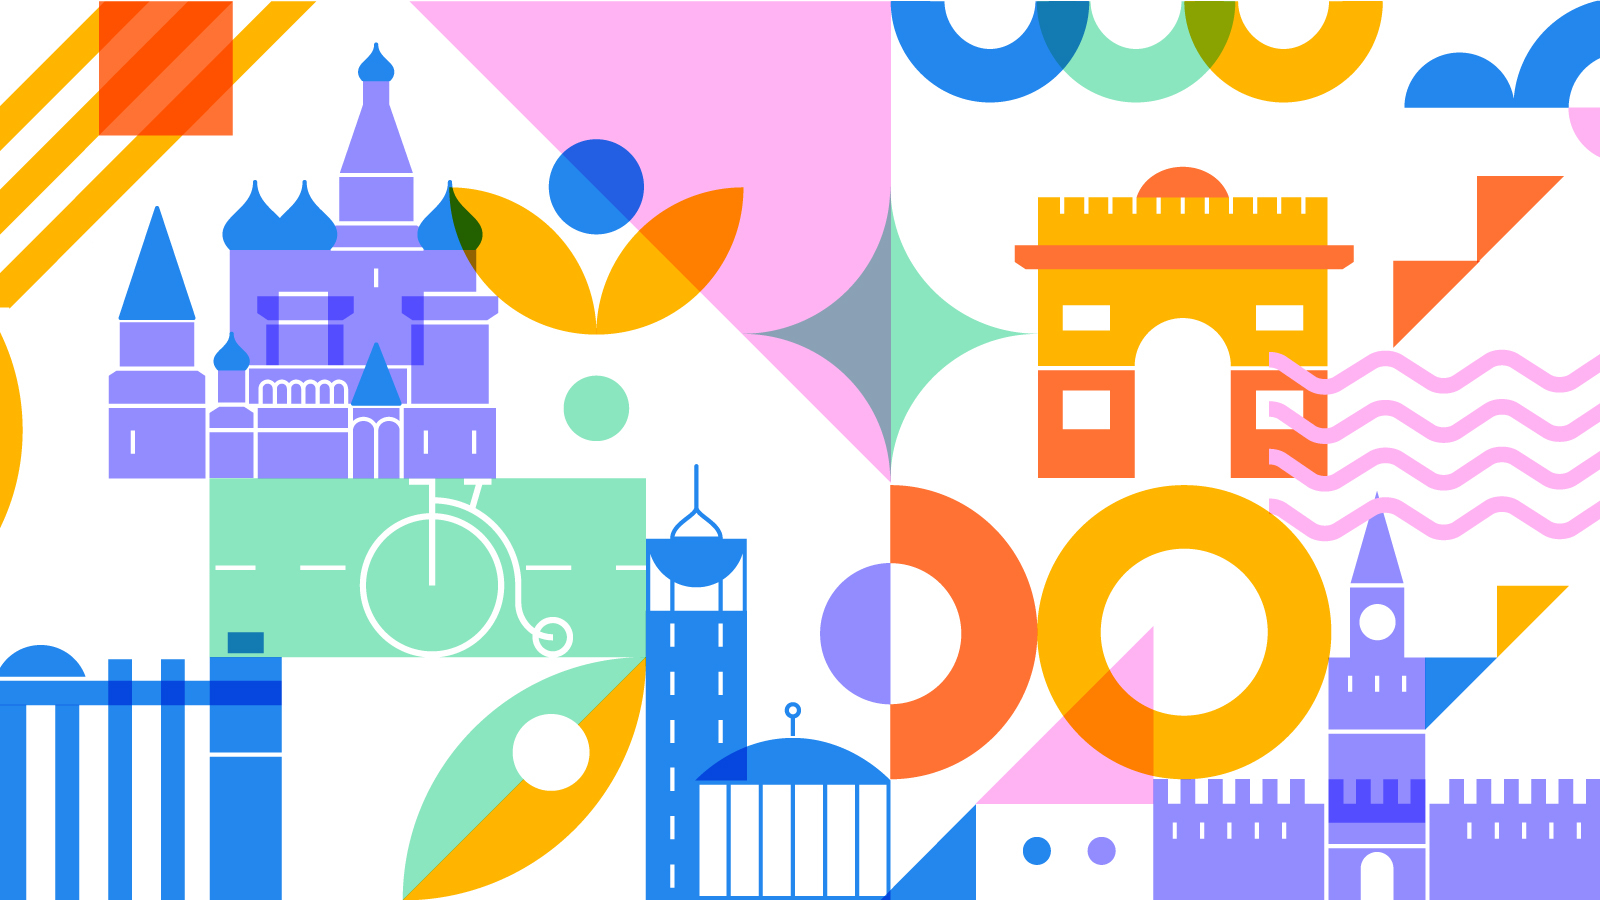 Красочный фирменный паттерн в основе фирменного стиля Московского велофестиваля создан на основе стилизованных образов главных достопримечательностей столицы.